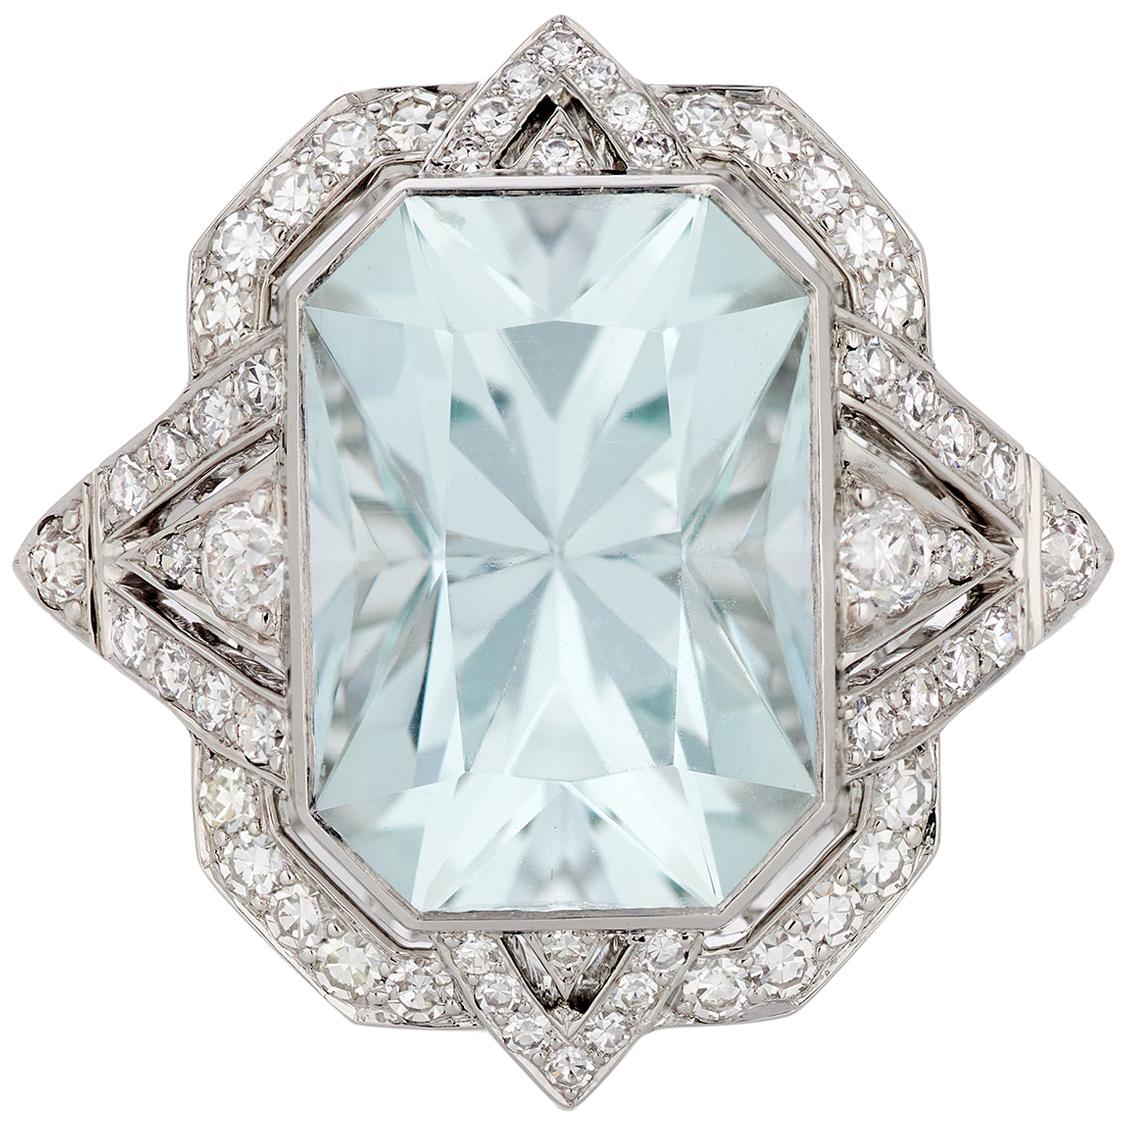 6.39 Carat Radiant Cut Aquamarine and Diamond Ring in Platinum